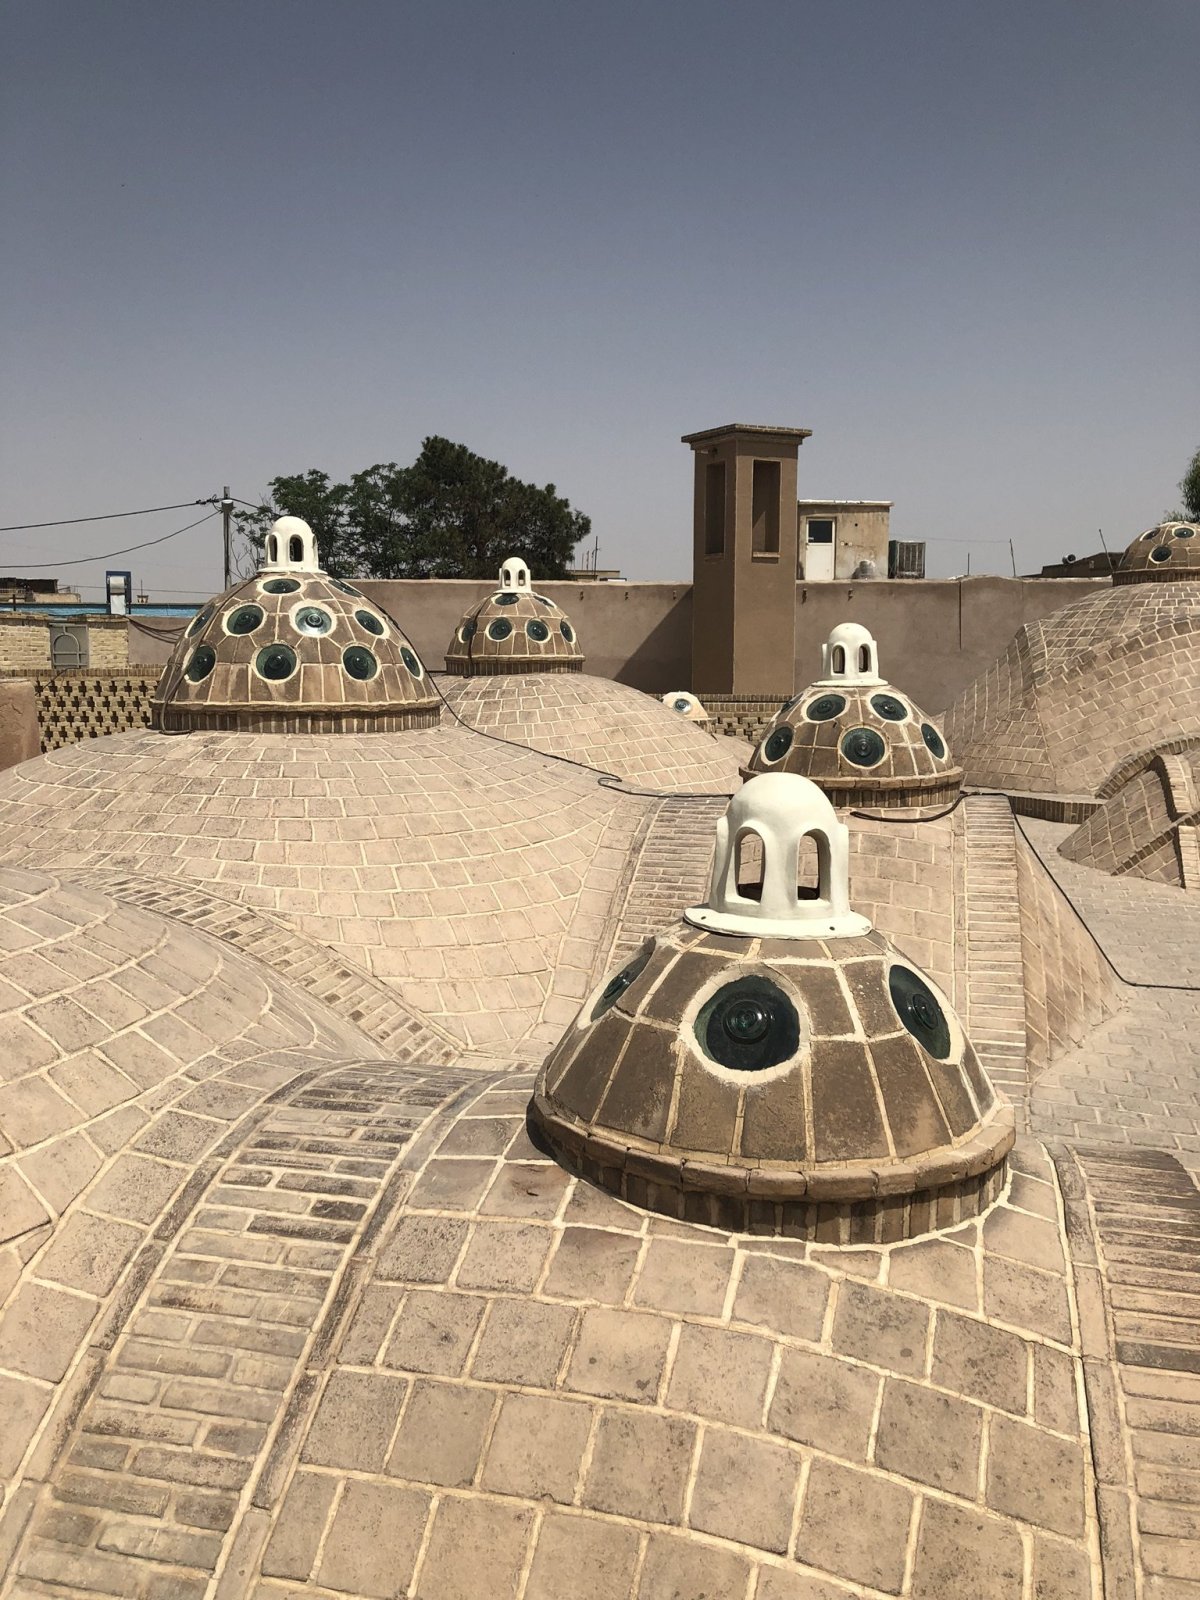 Střecha lázní s kupolemi pro odvod horkého vzduchu. A ten hranatý komín vzadu? Takhle vypadá ta stará íránská klimatizace.